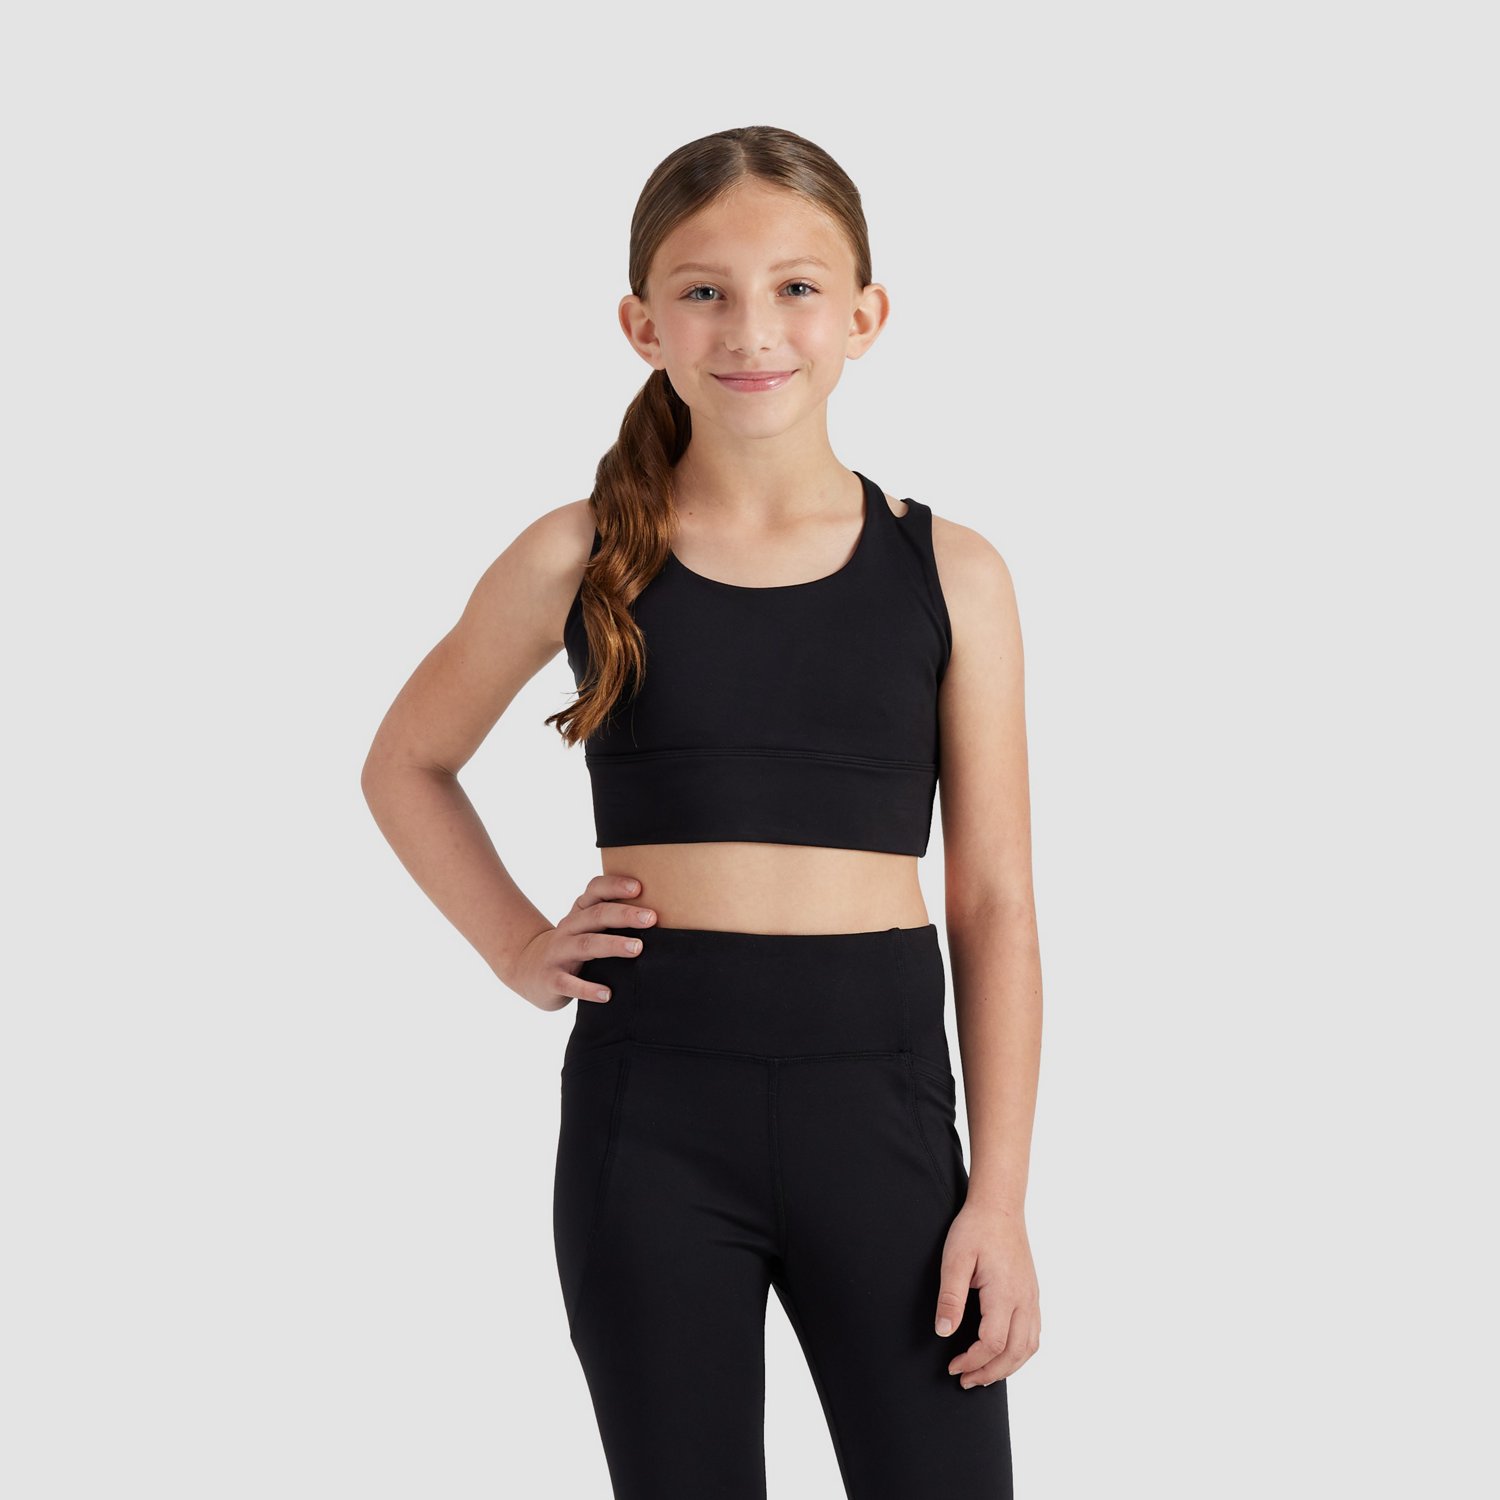 DMiya】12-16 Y Sport Bra Teen Underwear Kids Training Bra Girls